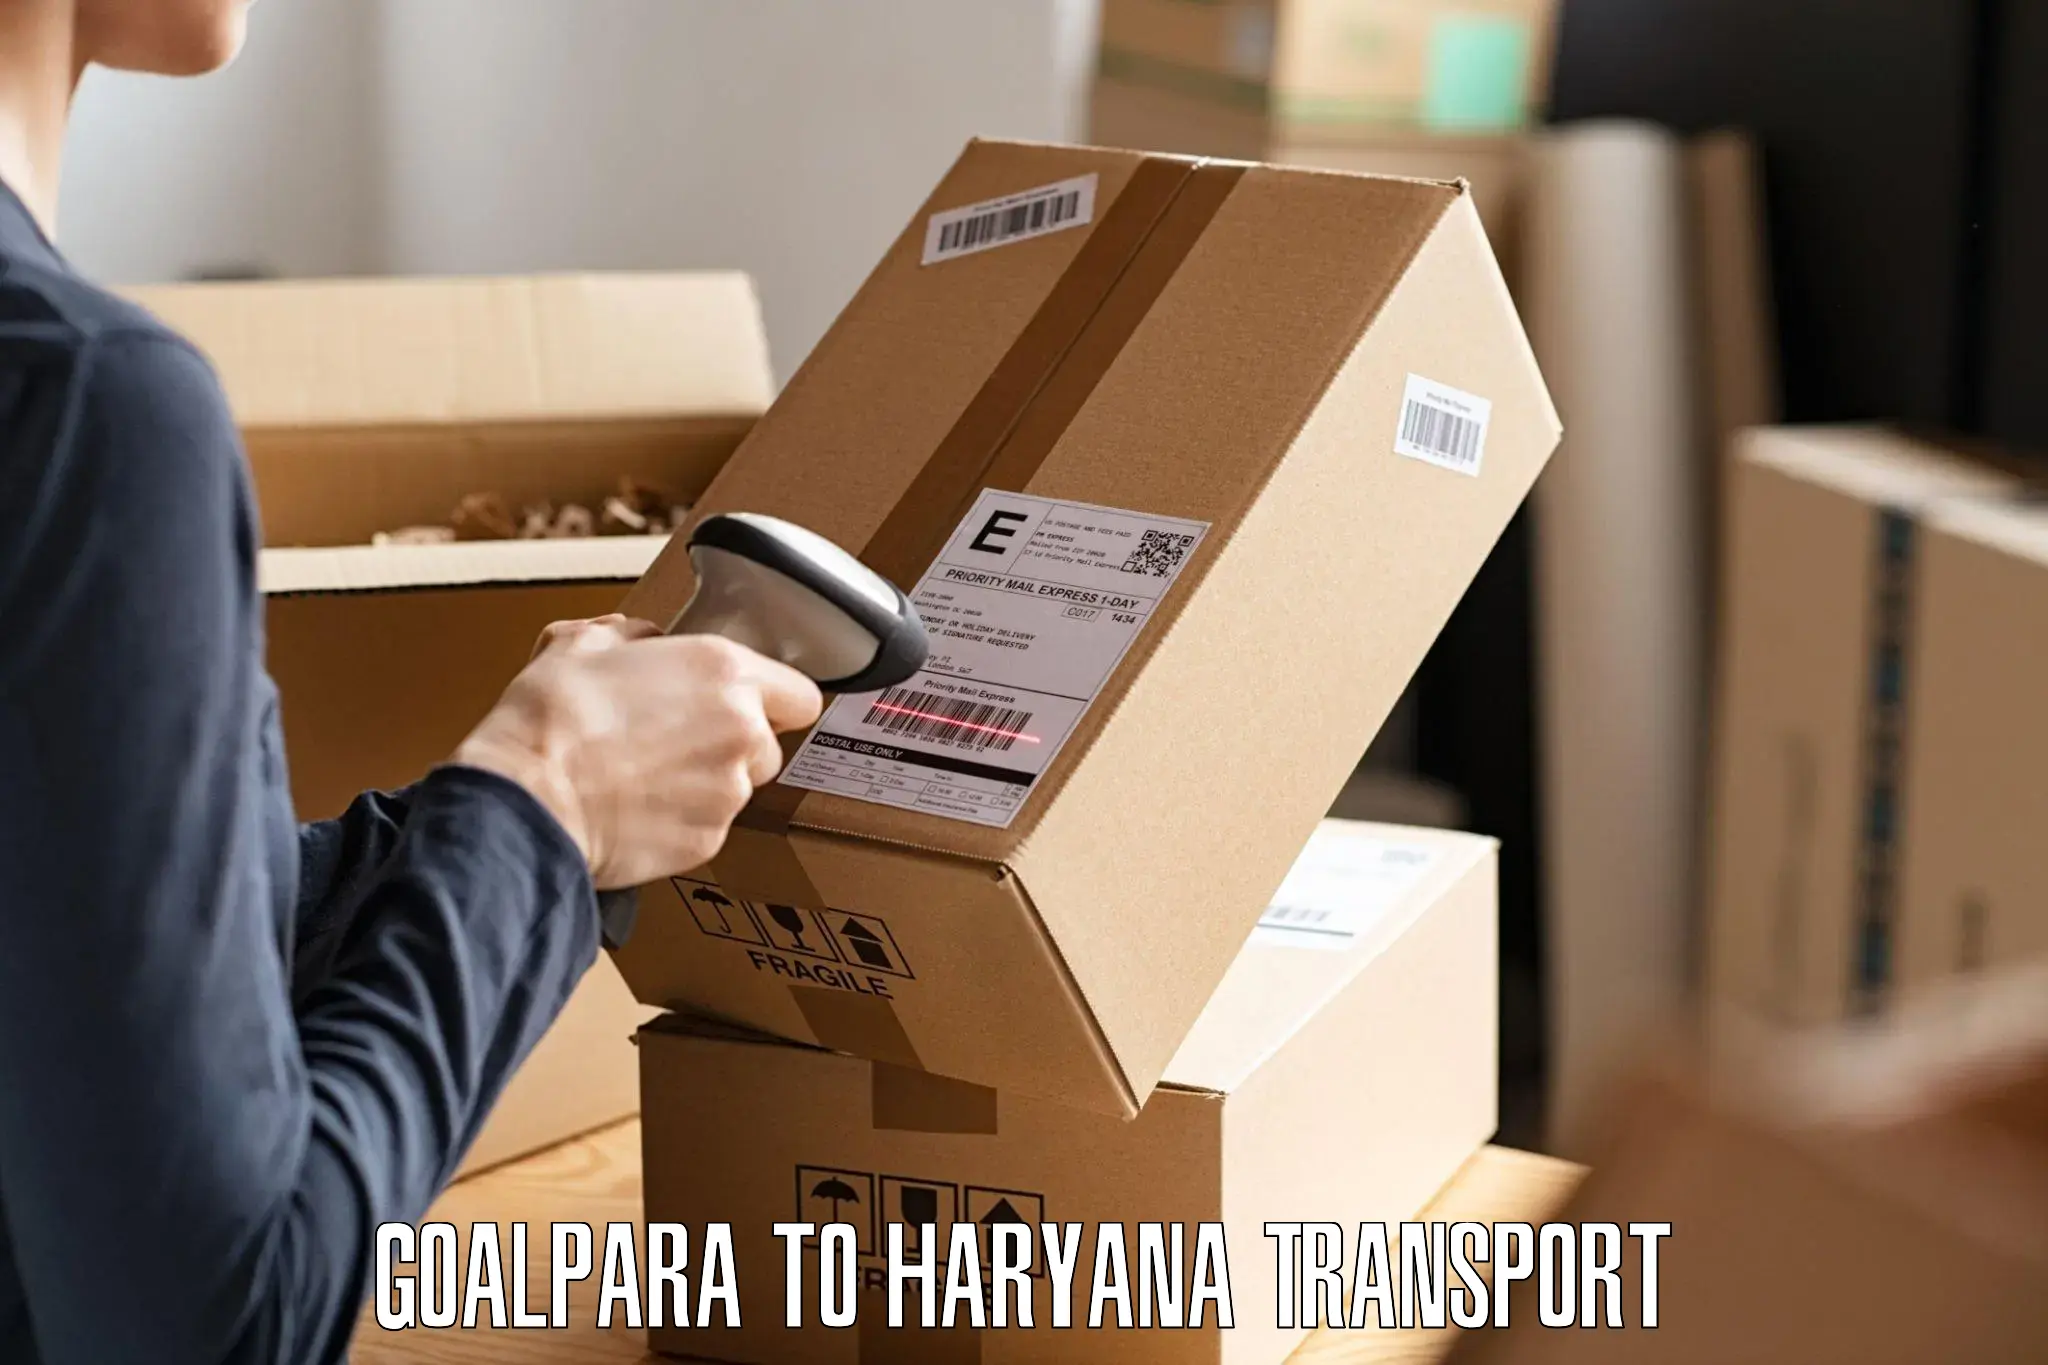 Daily transport service Goalpara to Fatehabad